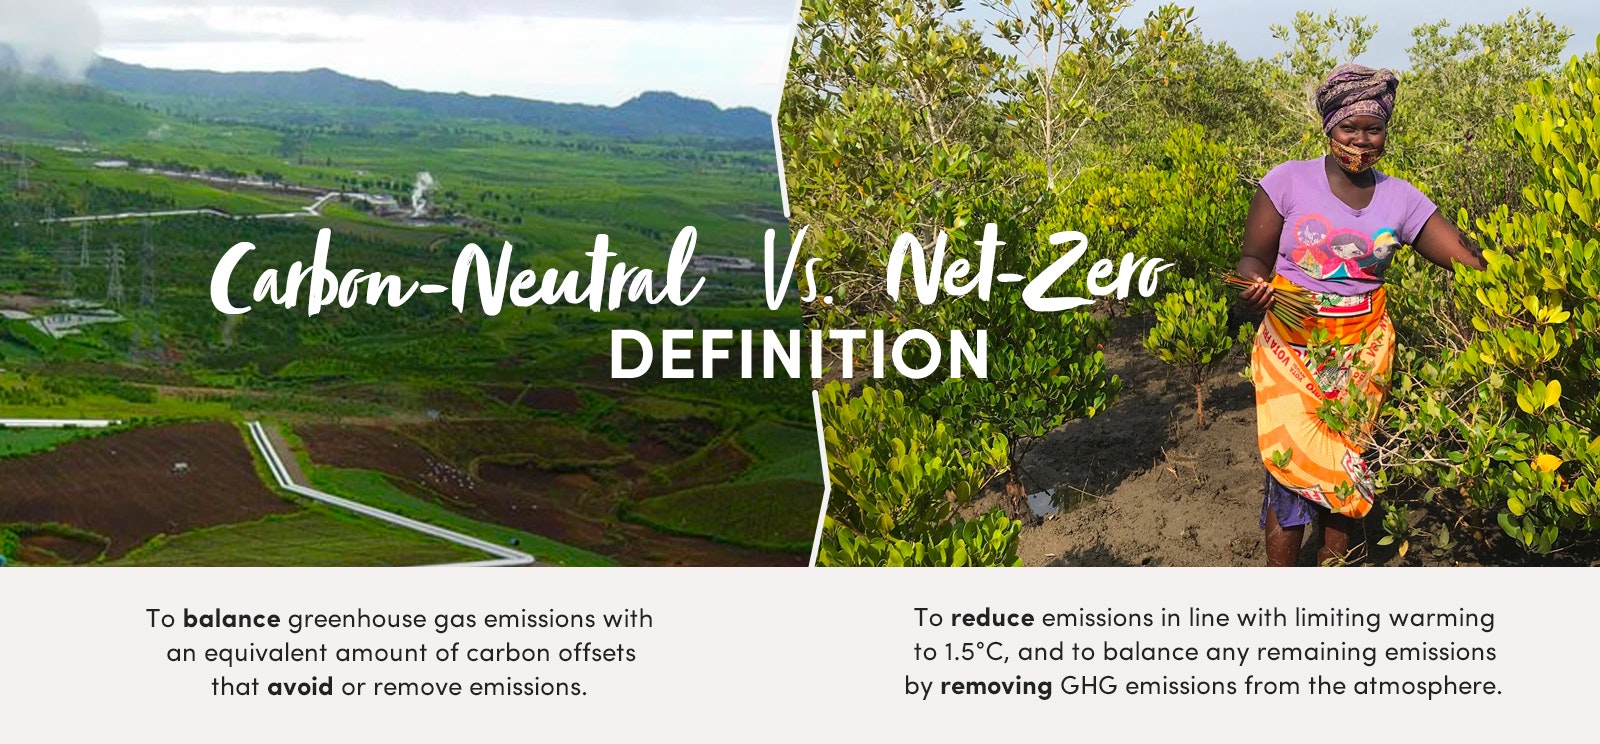 carbon neutral vs net zero definition image